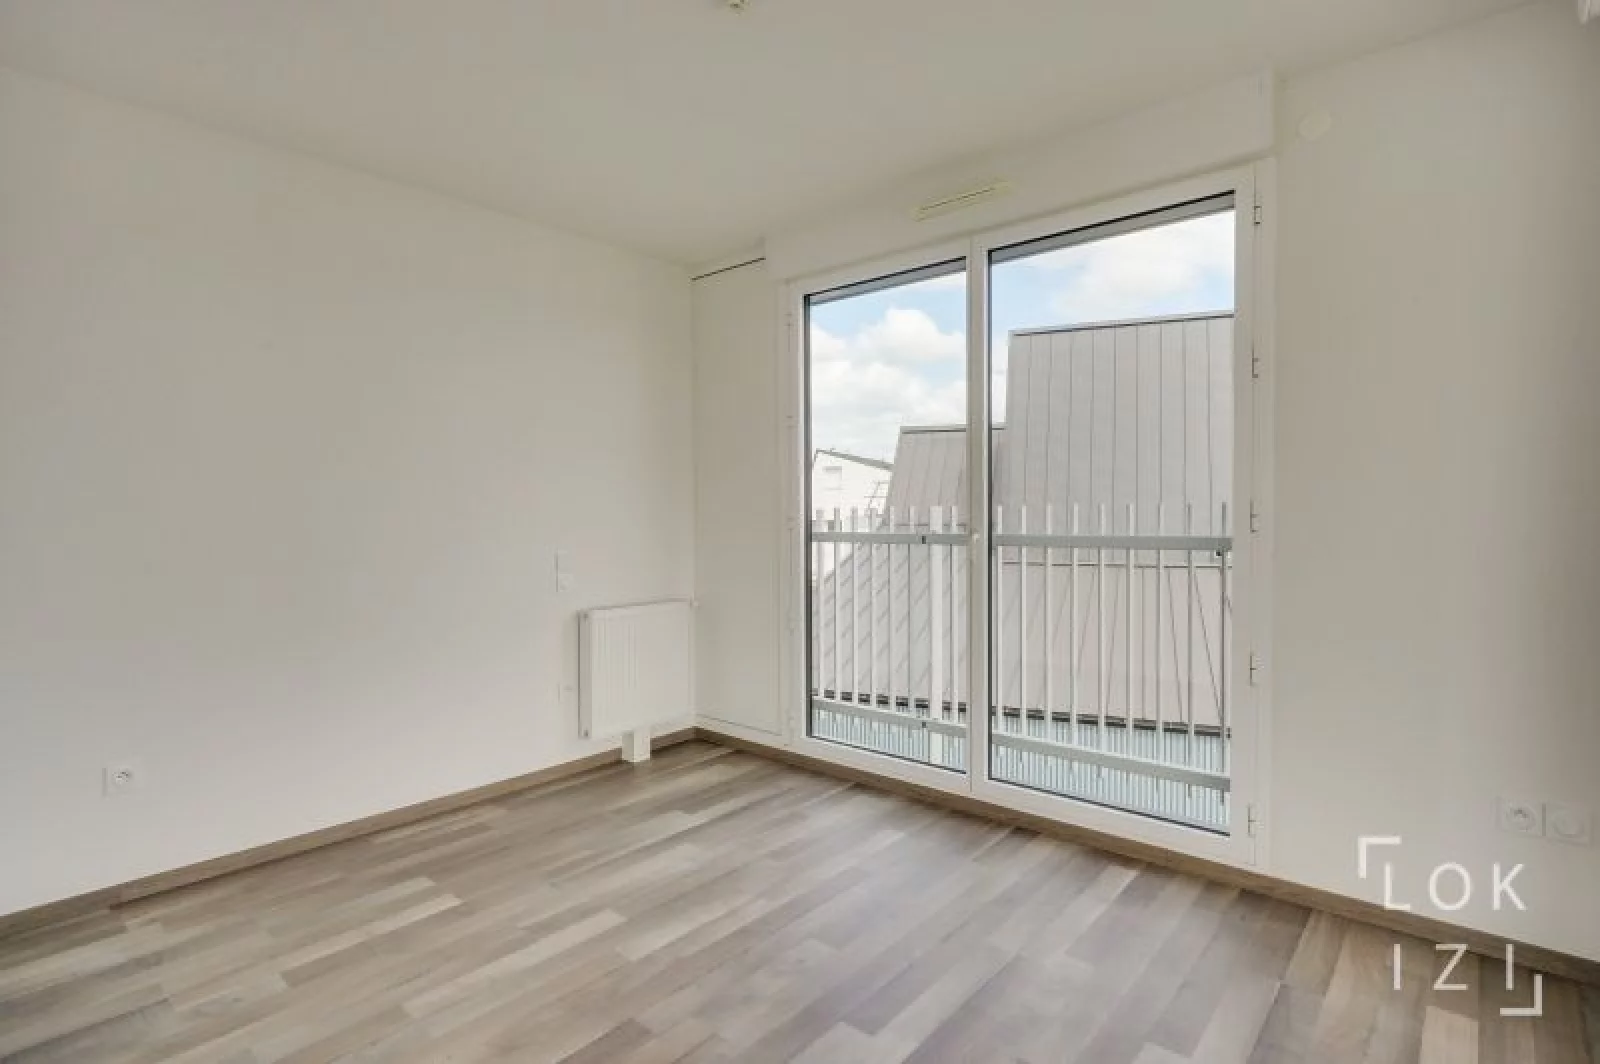 Vente appartement neuf T4 de 102m² (Bordeaux - Bassins à flot)